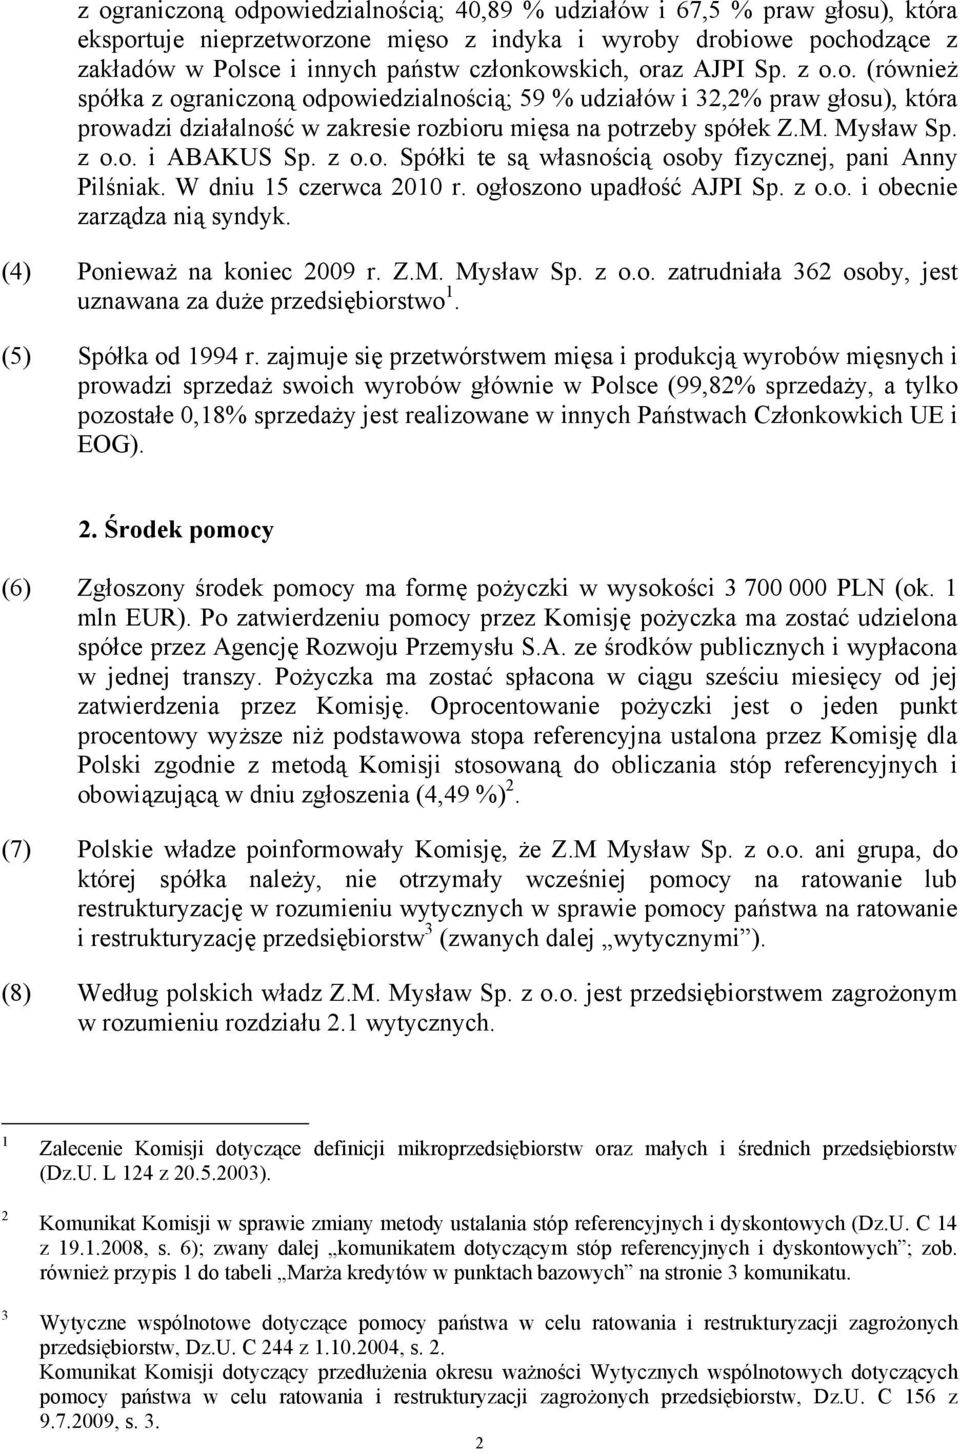 Mysław Sp. z o.o. i ABAKUS Sp. z o.o. Spółki te są własnością osoby fizycznej, pani Anny Pilśniak. W dniu 15 czerwca 2010 r. ogłoszono upadłość AJPI Sp. z o.o. i obecnie zarządza nią syndyk.